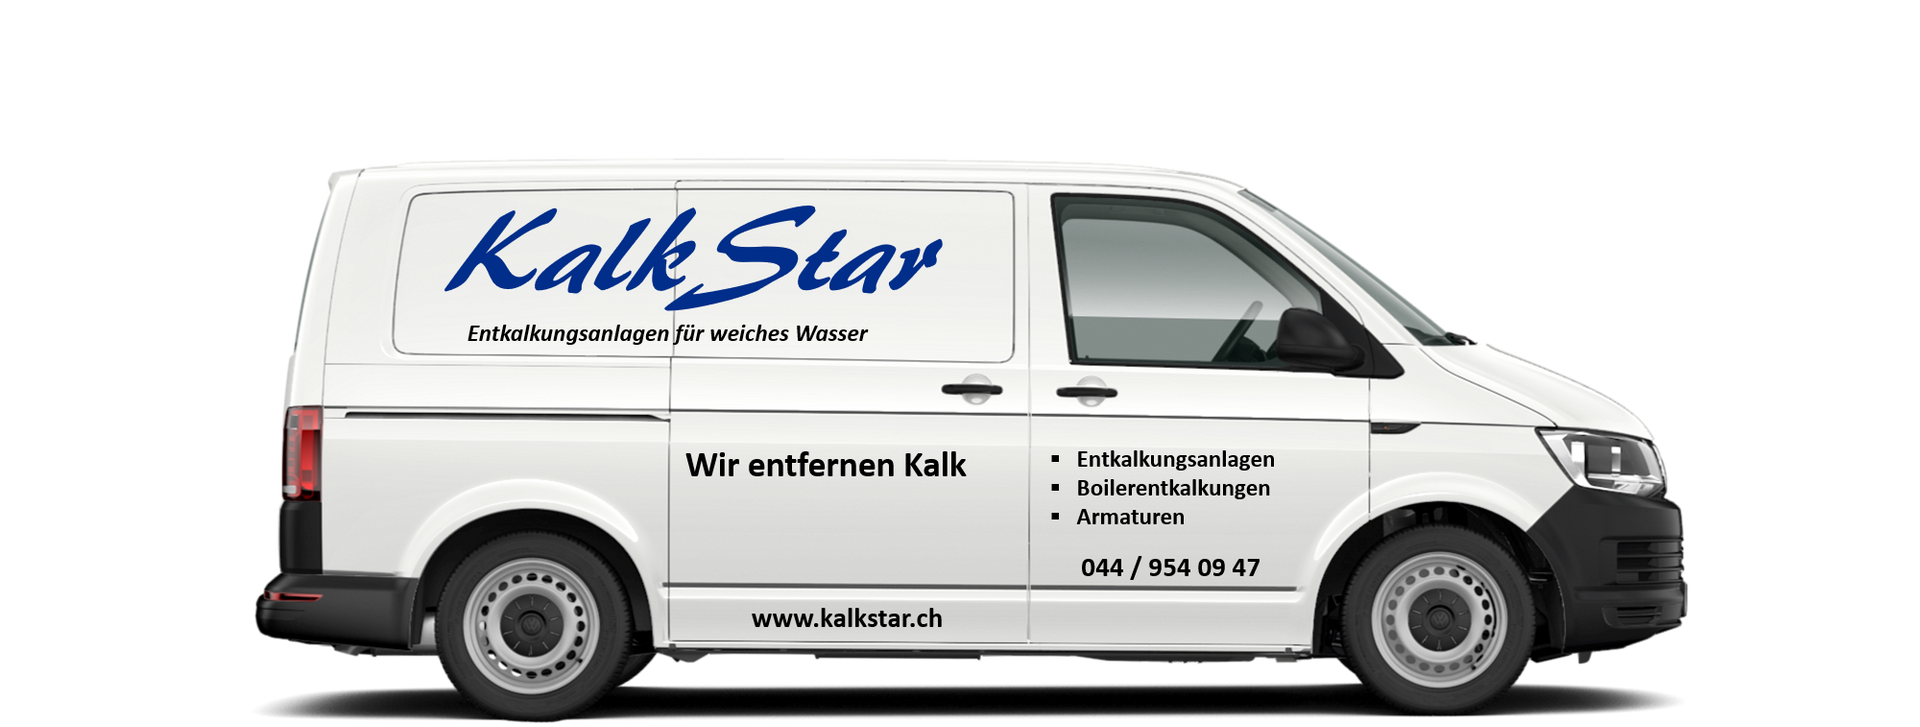 Fahrzeug der KalkStar Neuenschwander GmbH